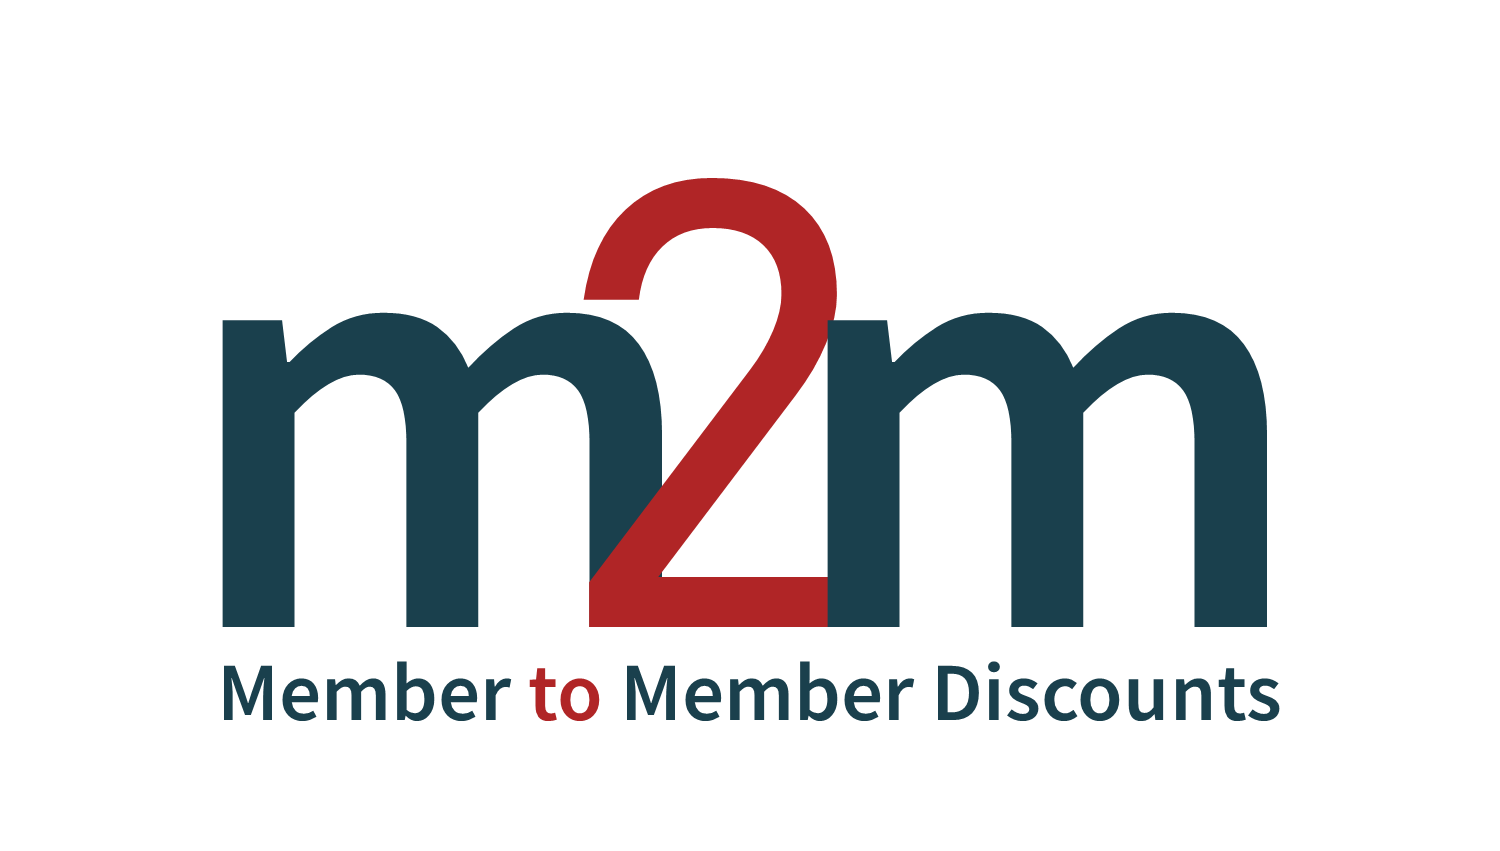 Member to Member Discount Program